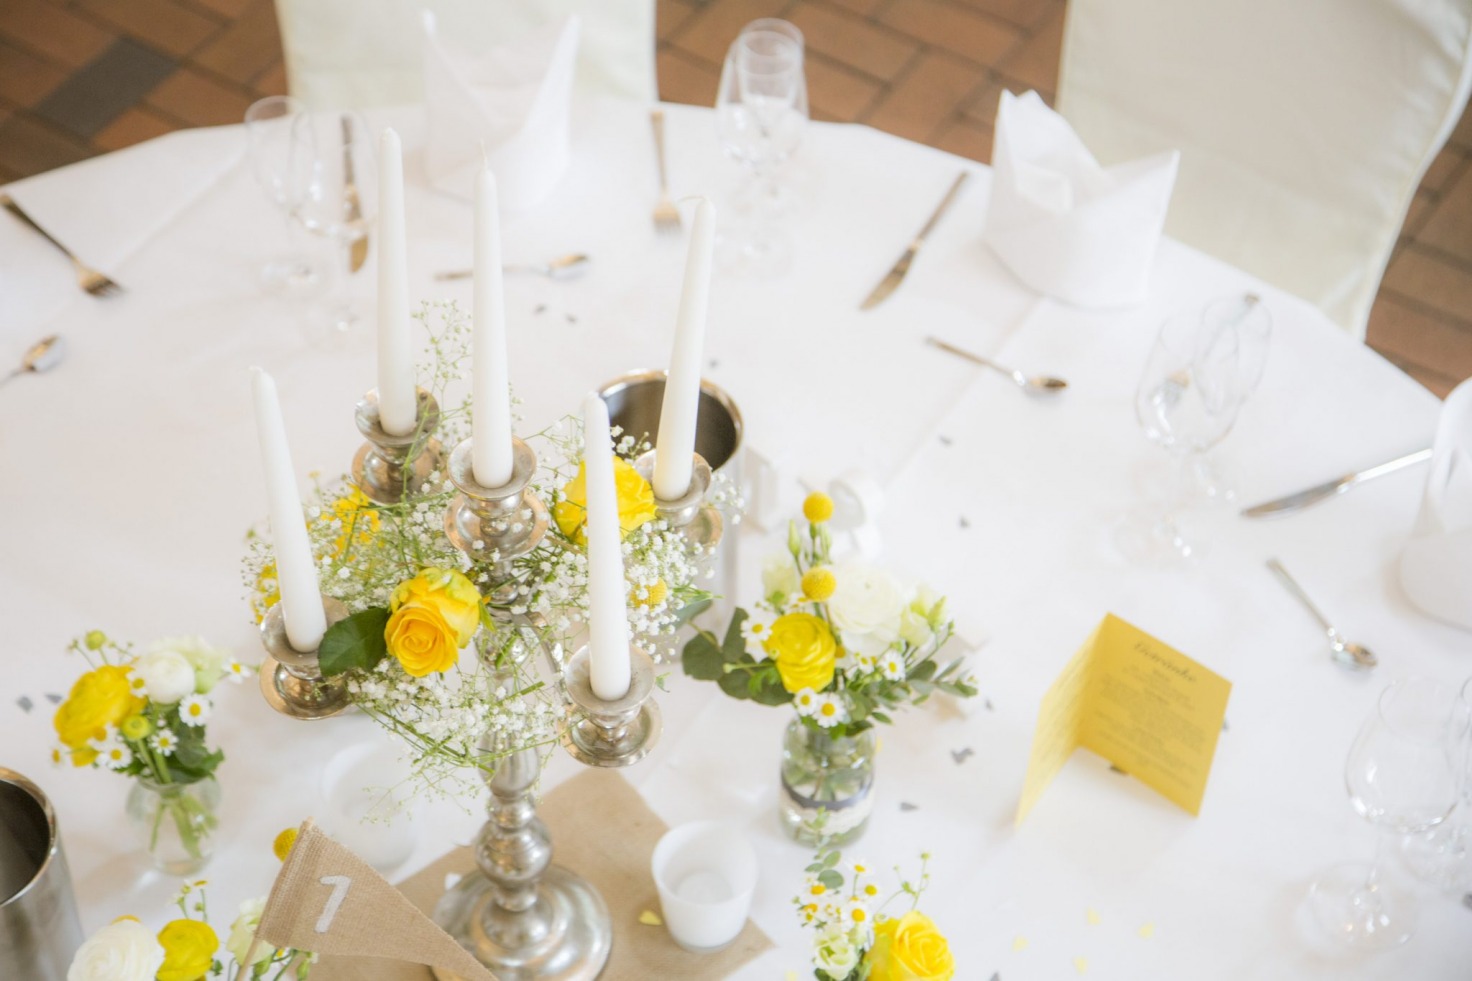 Hochzeit von Jannine und Christian in Münster: Kerzenständer auf dem Hochzeitstisch